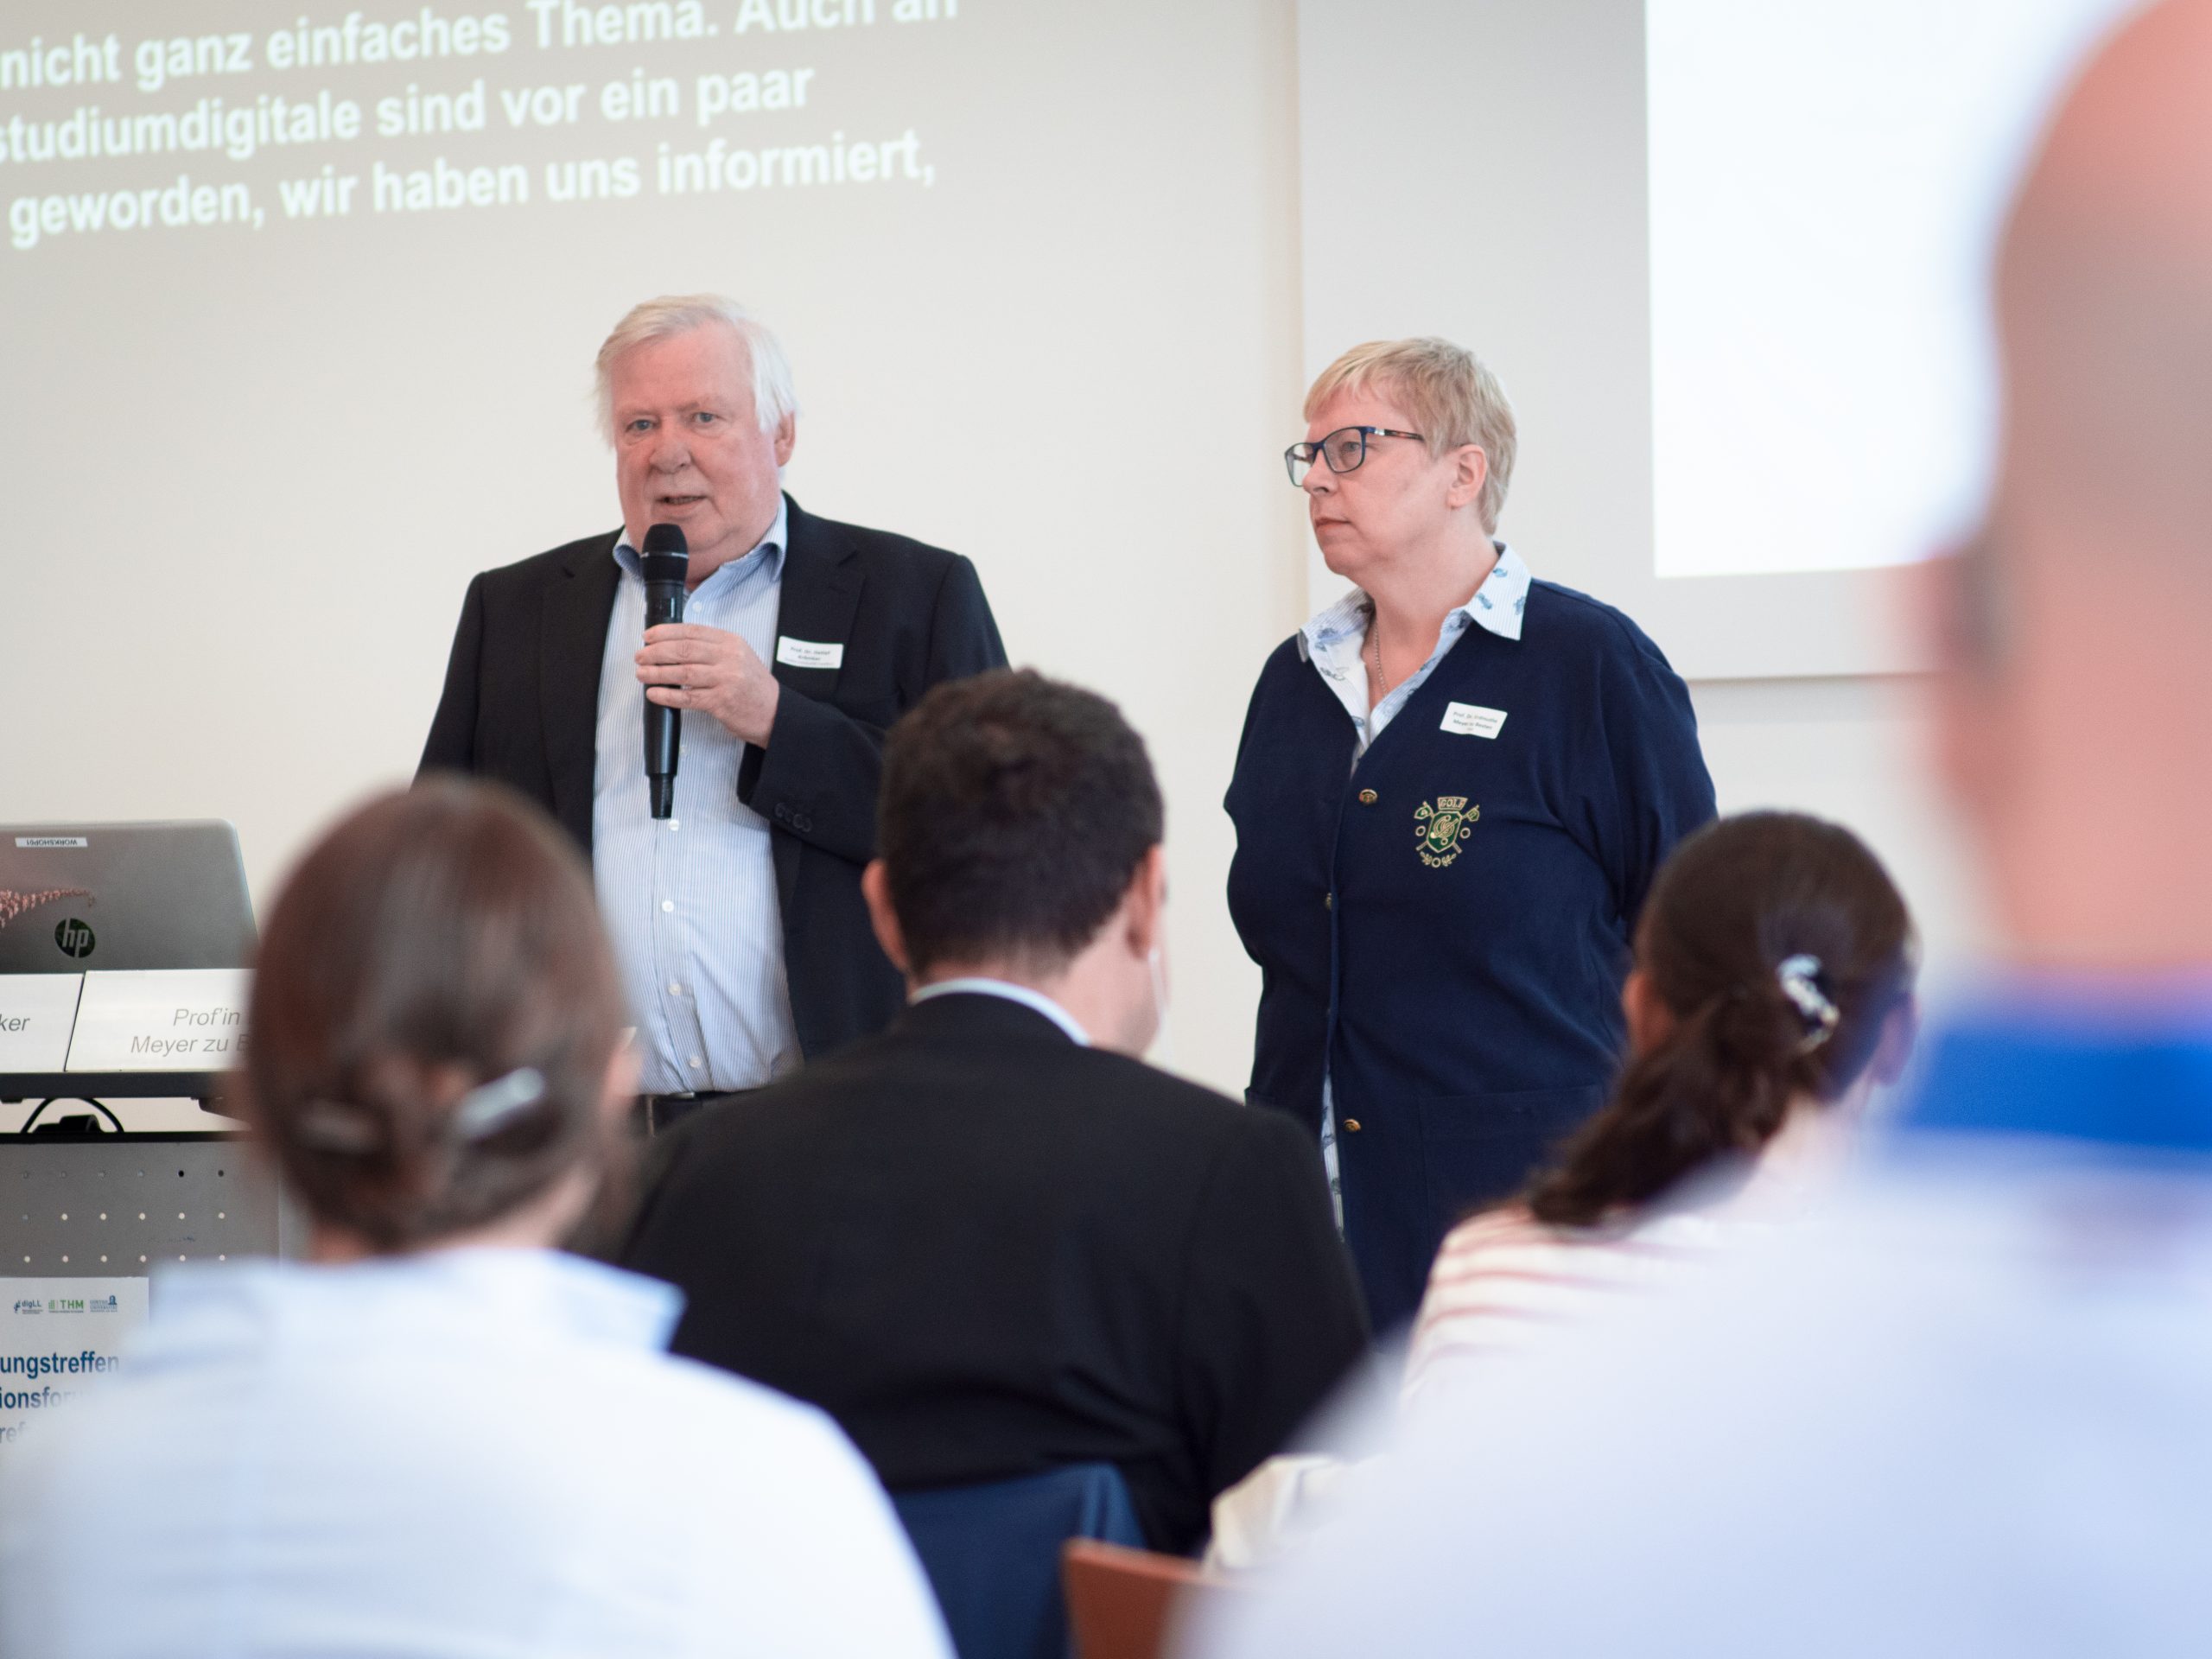 Prof. Dr. Krömker und Prof. Dr. Meyer zu Bexten sprechen vor dem Publikum.